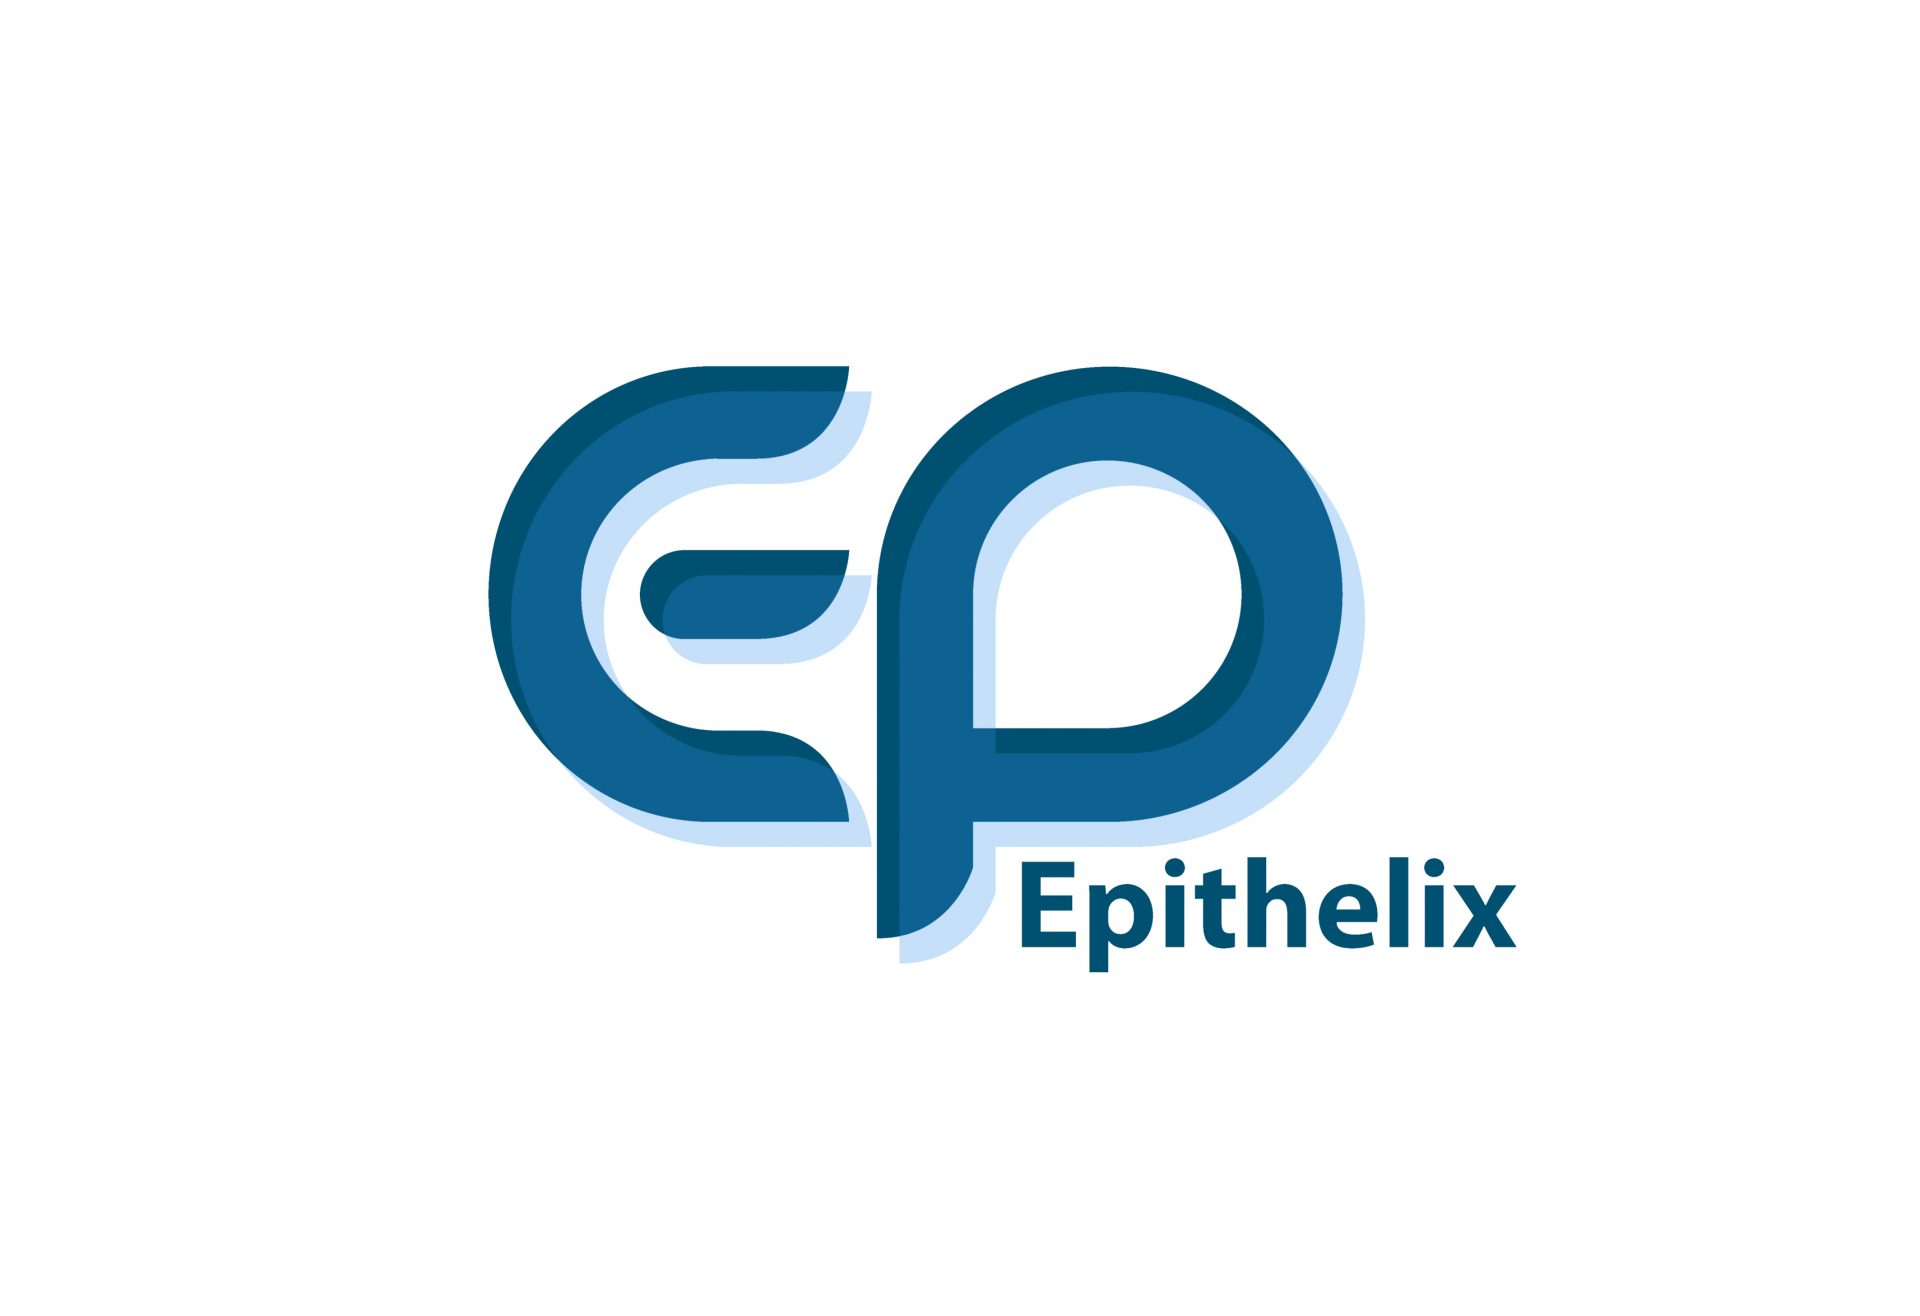 Epithelix2020 logo